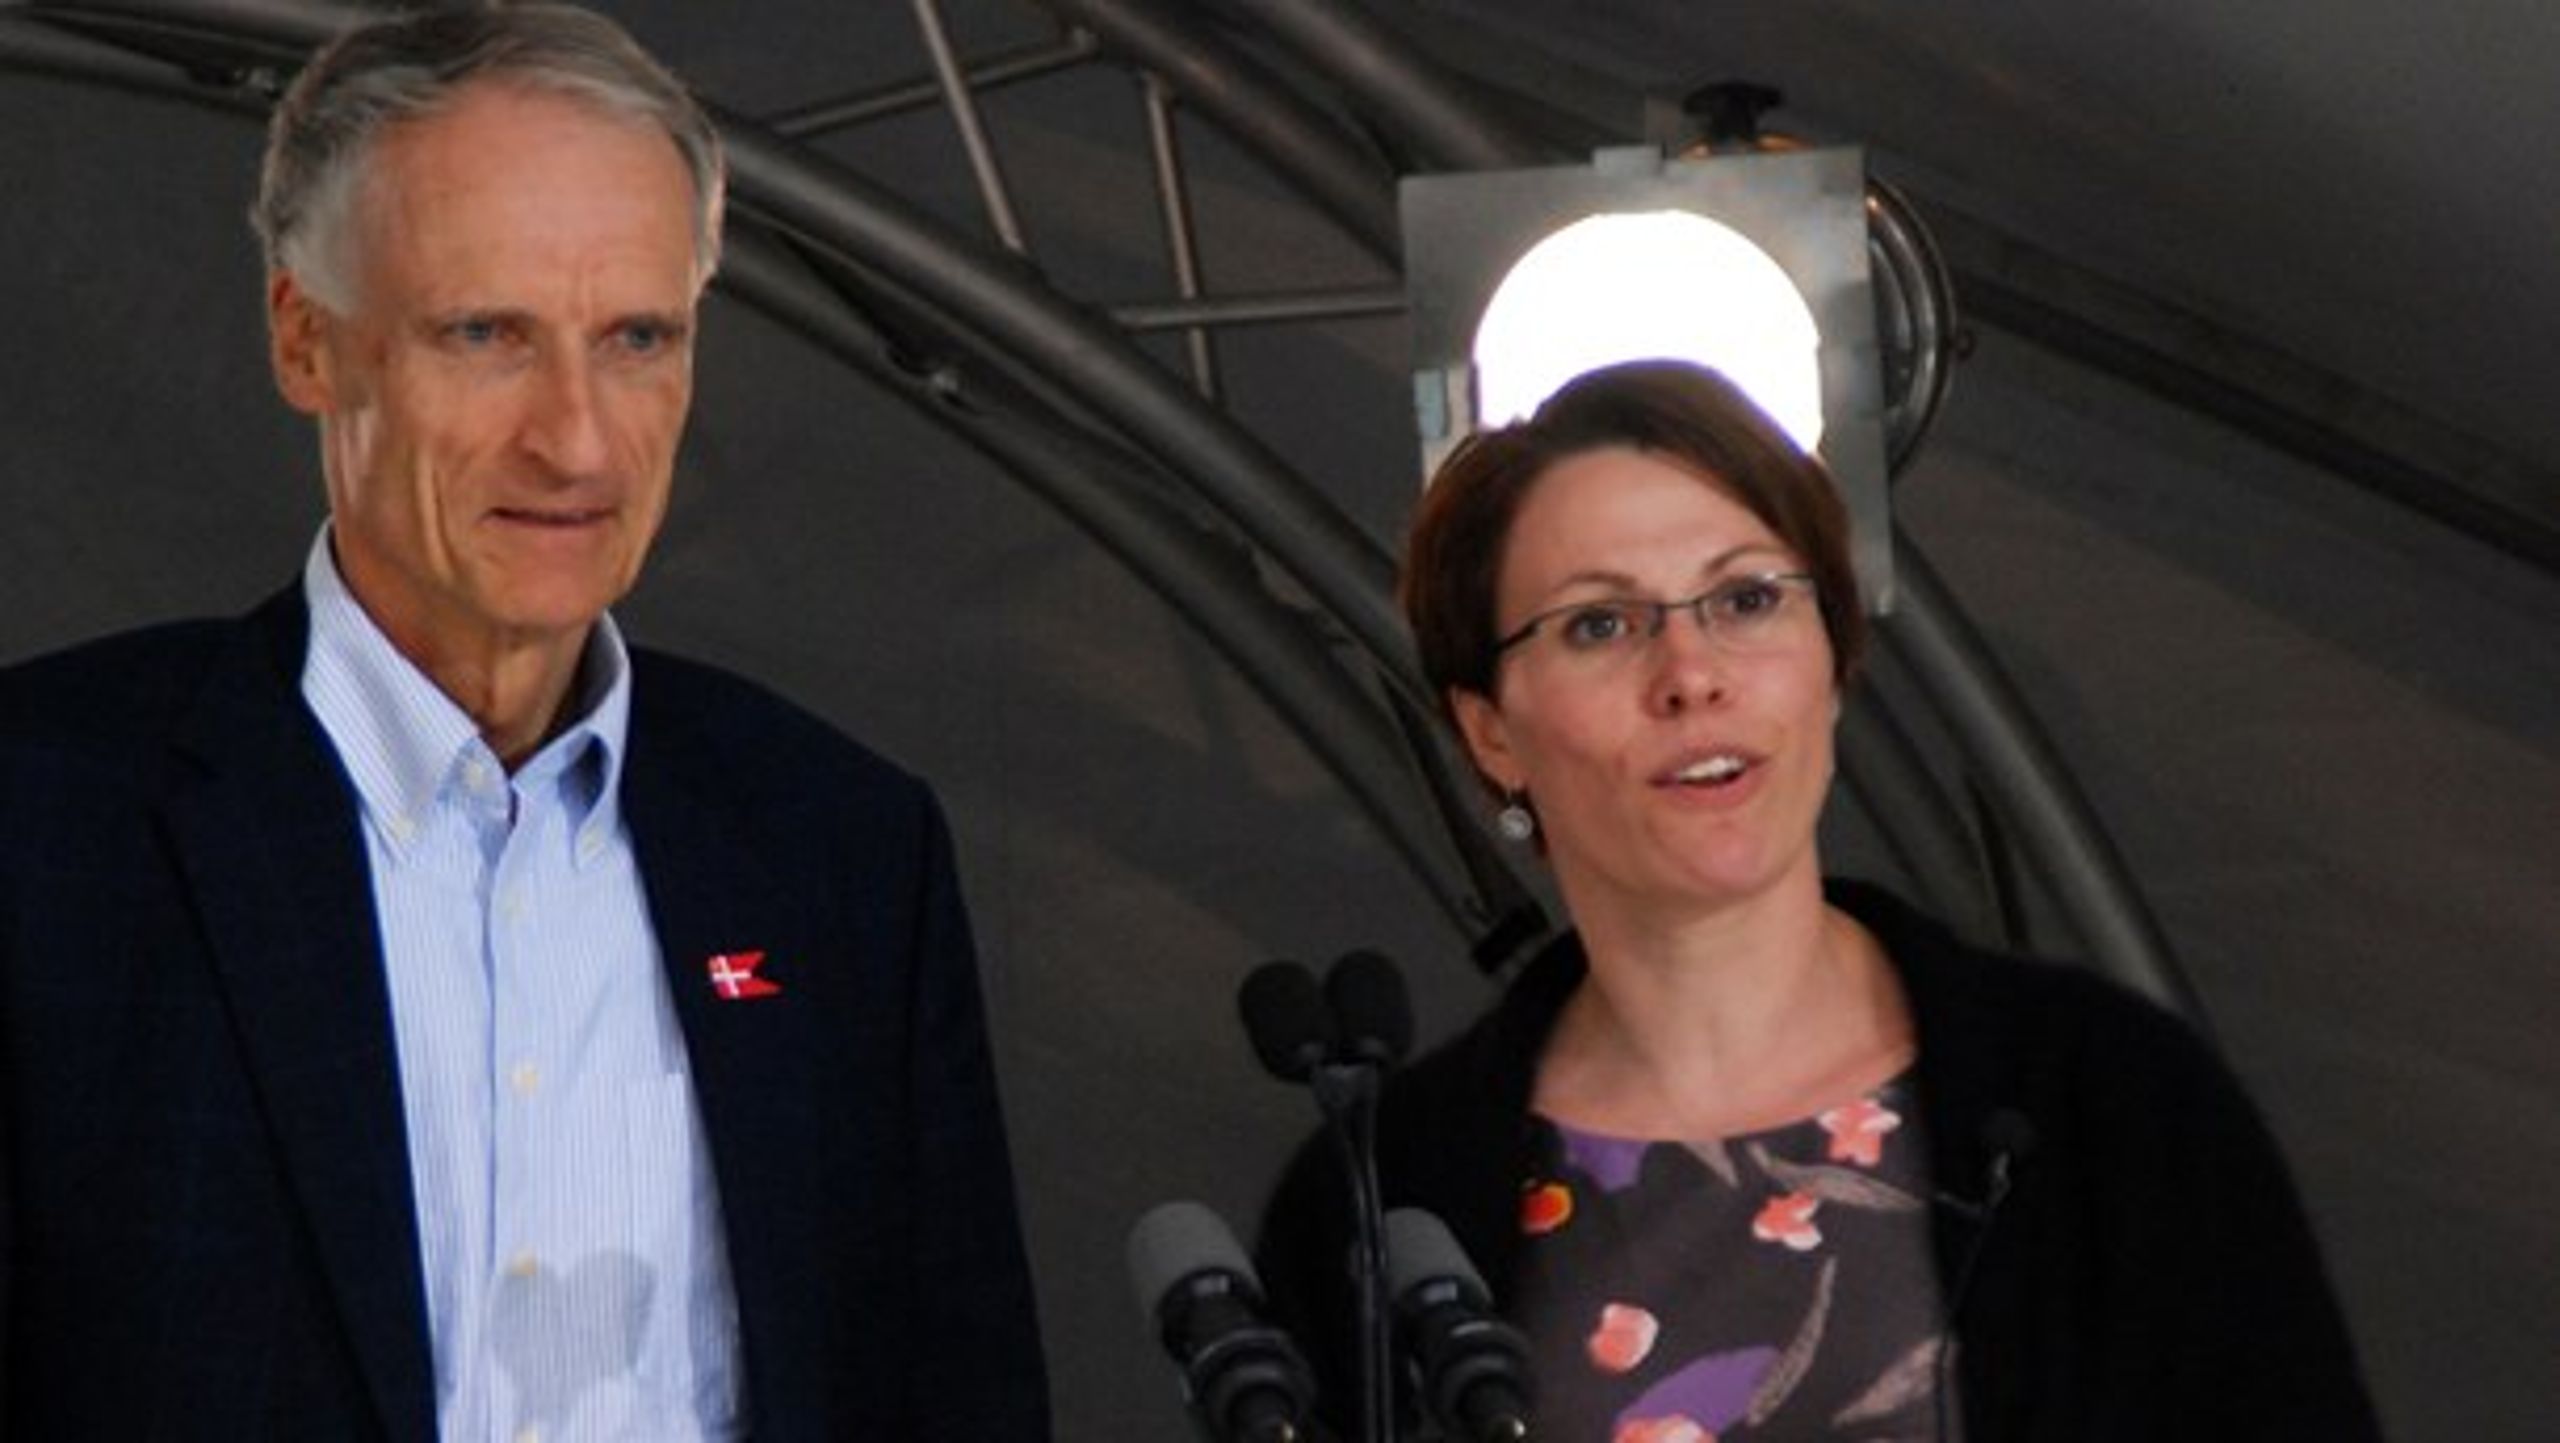 Folkemødets forældre Bertel Haarder (V) og Winni Grosbøll (S) dengang i 2011, da det hele startede. Politikerleden var drønet i bund gennem de ti år forud. Fra 2019 er det omsider vendt.